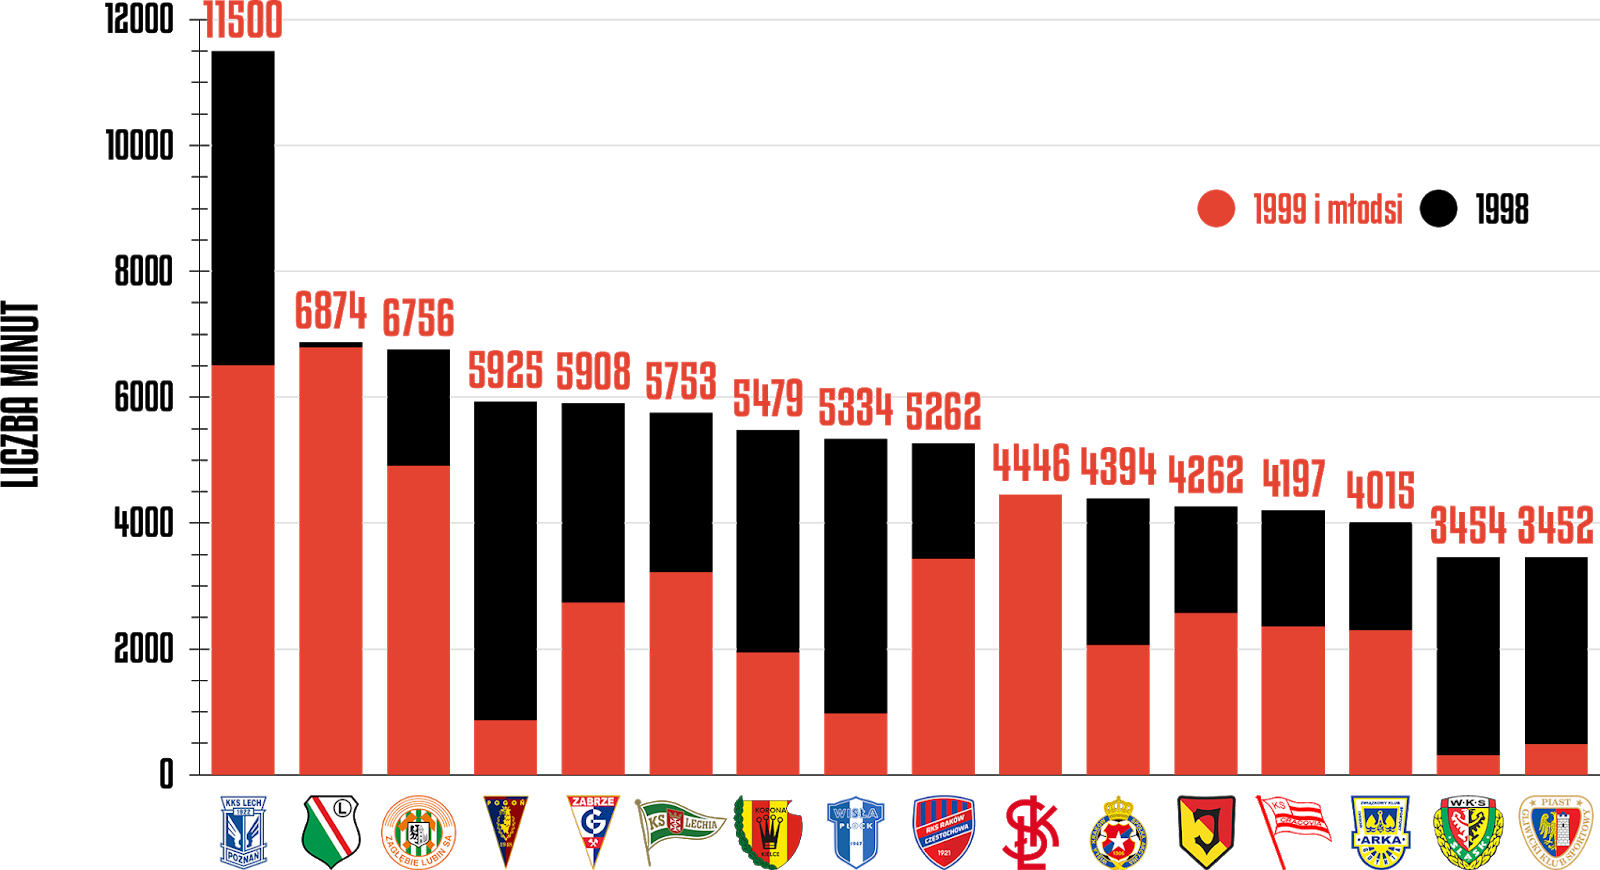 Klasyfikacja klubów pod względem rozegranego czasu przez młodzieżowców po 37 kolejkach PKO Ekstraklasy<br><br>Źródło: Opracowanie własne na podstawie ekstrastats.pl<br><br>graf. Bartosz Urban